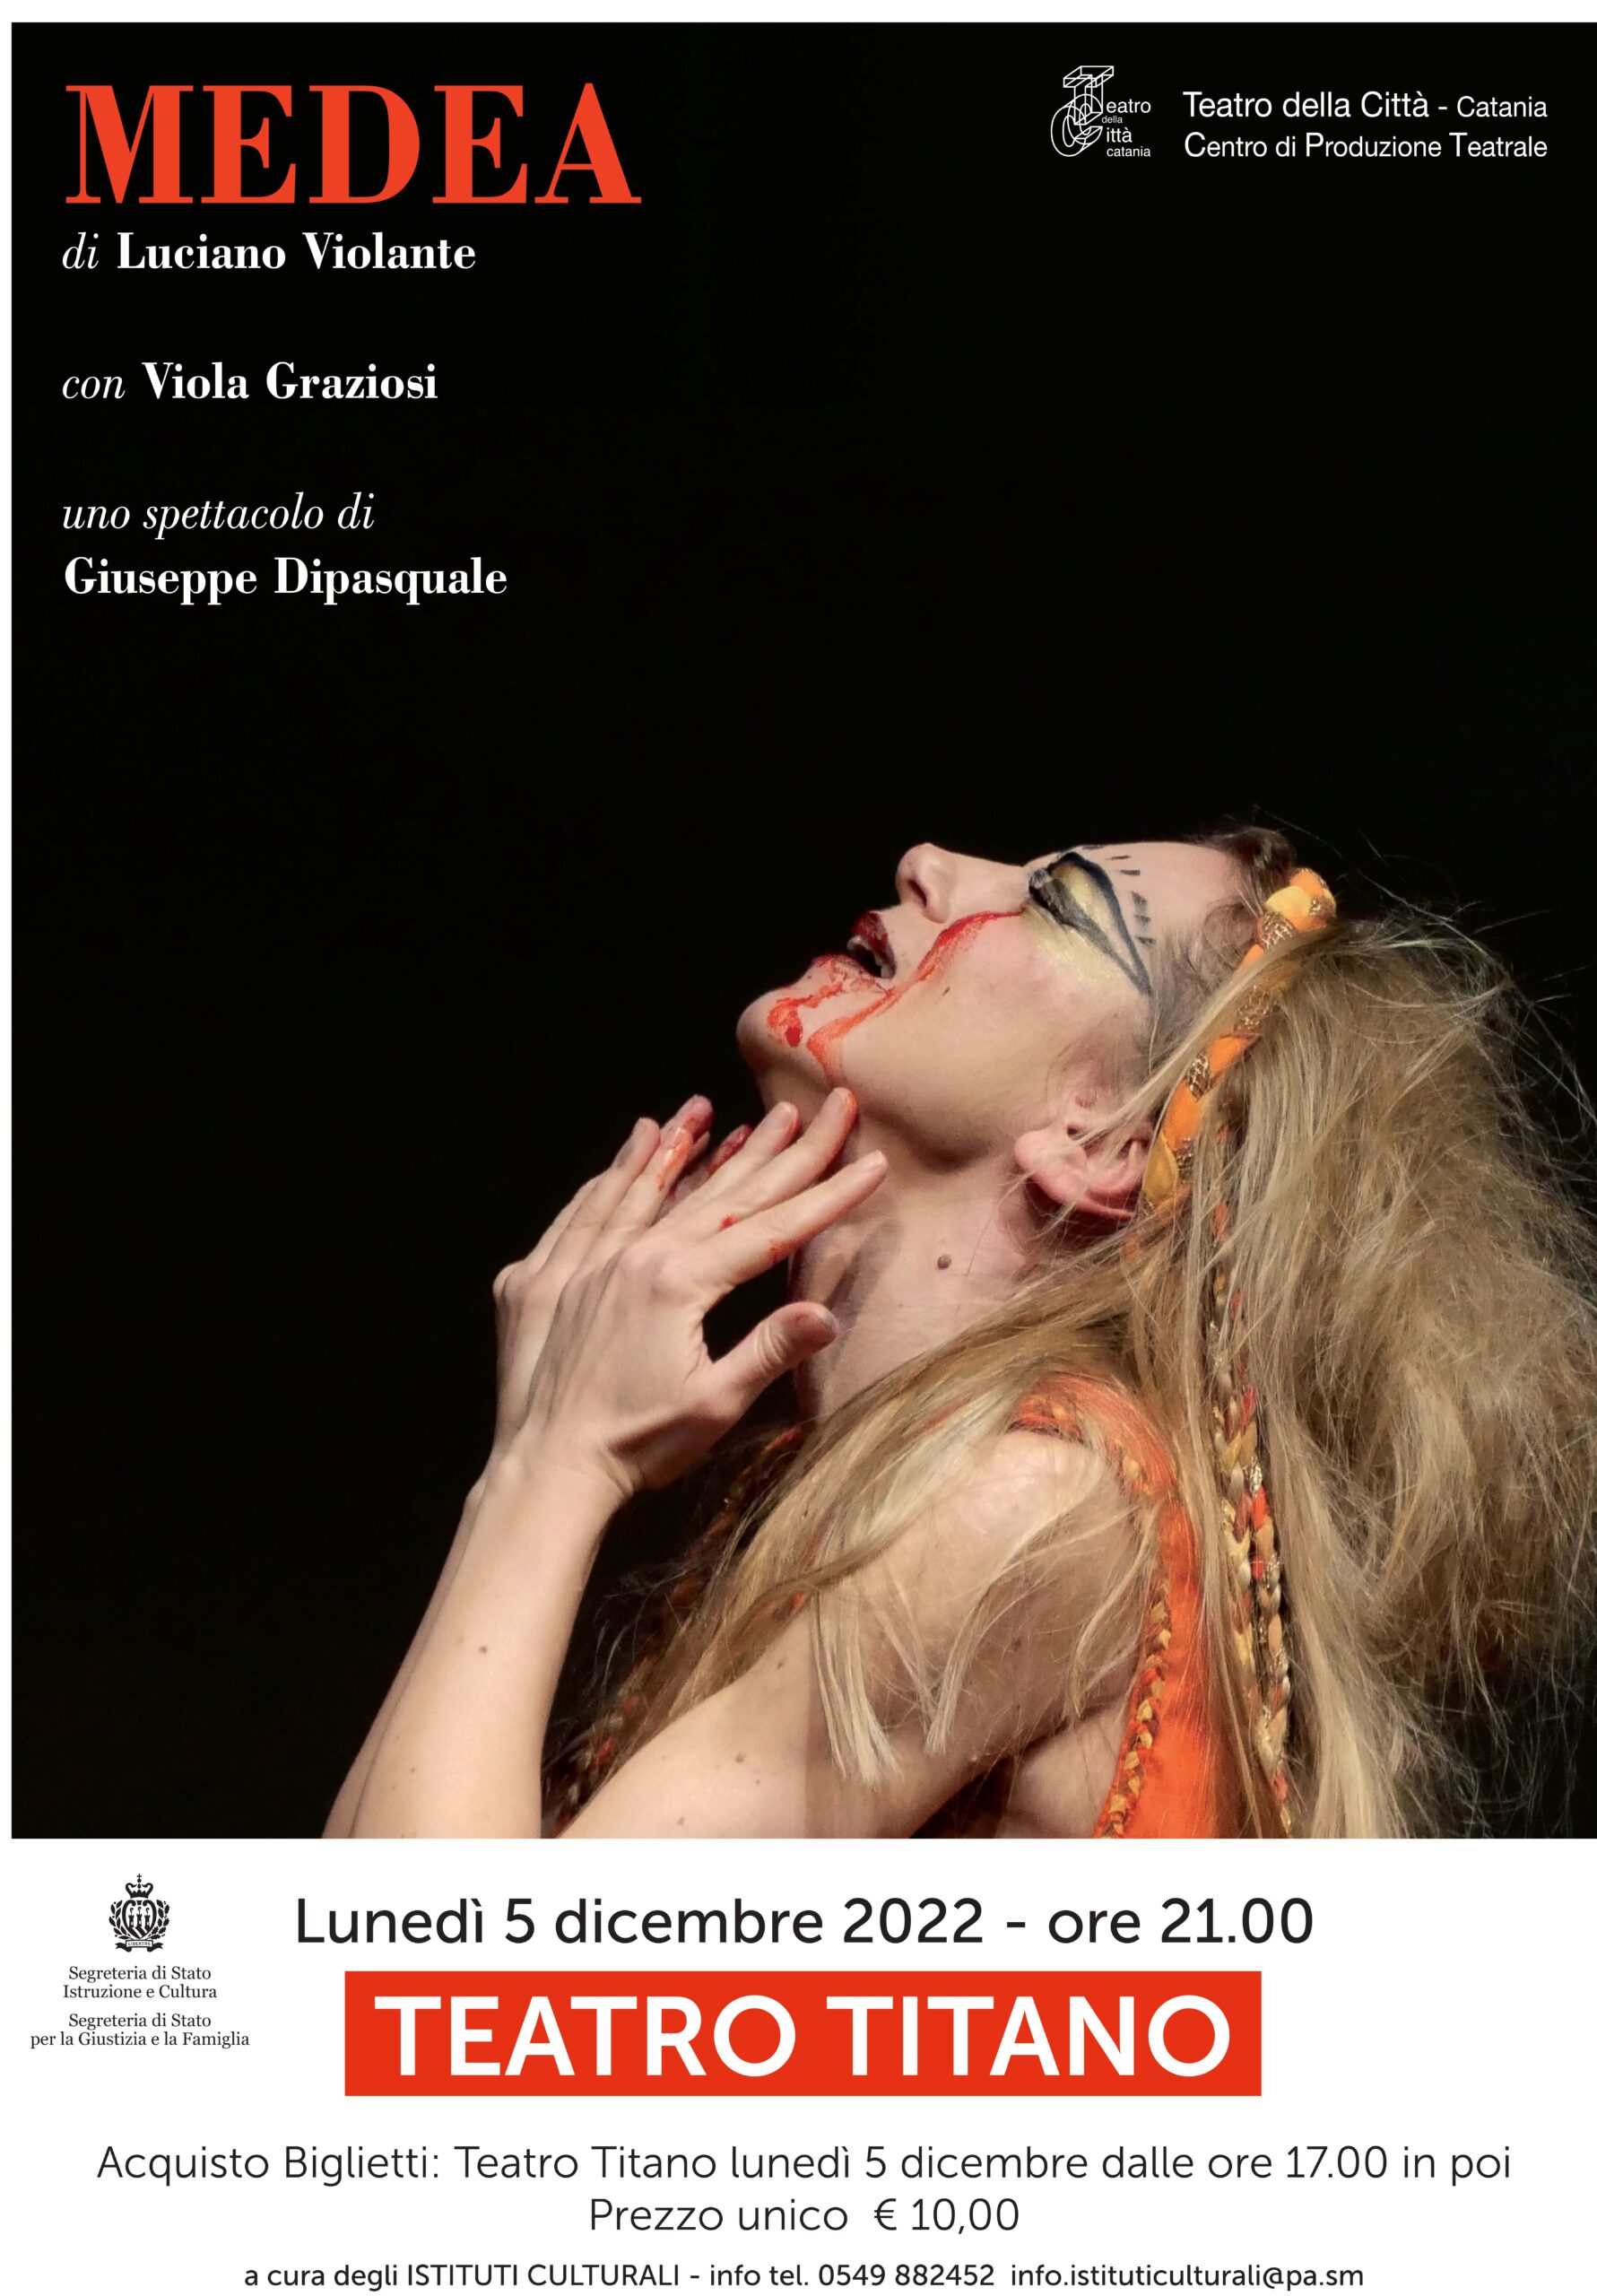 San Marino. “Medea” di Luciano Violante al Teatro Titano